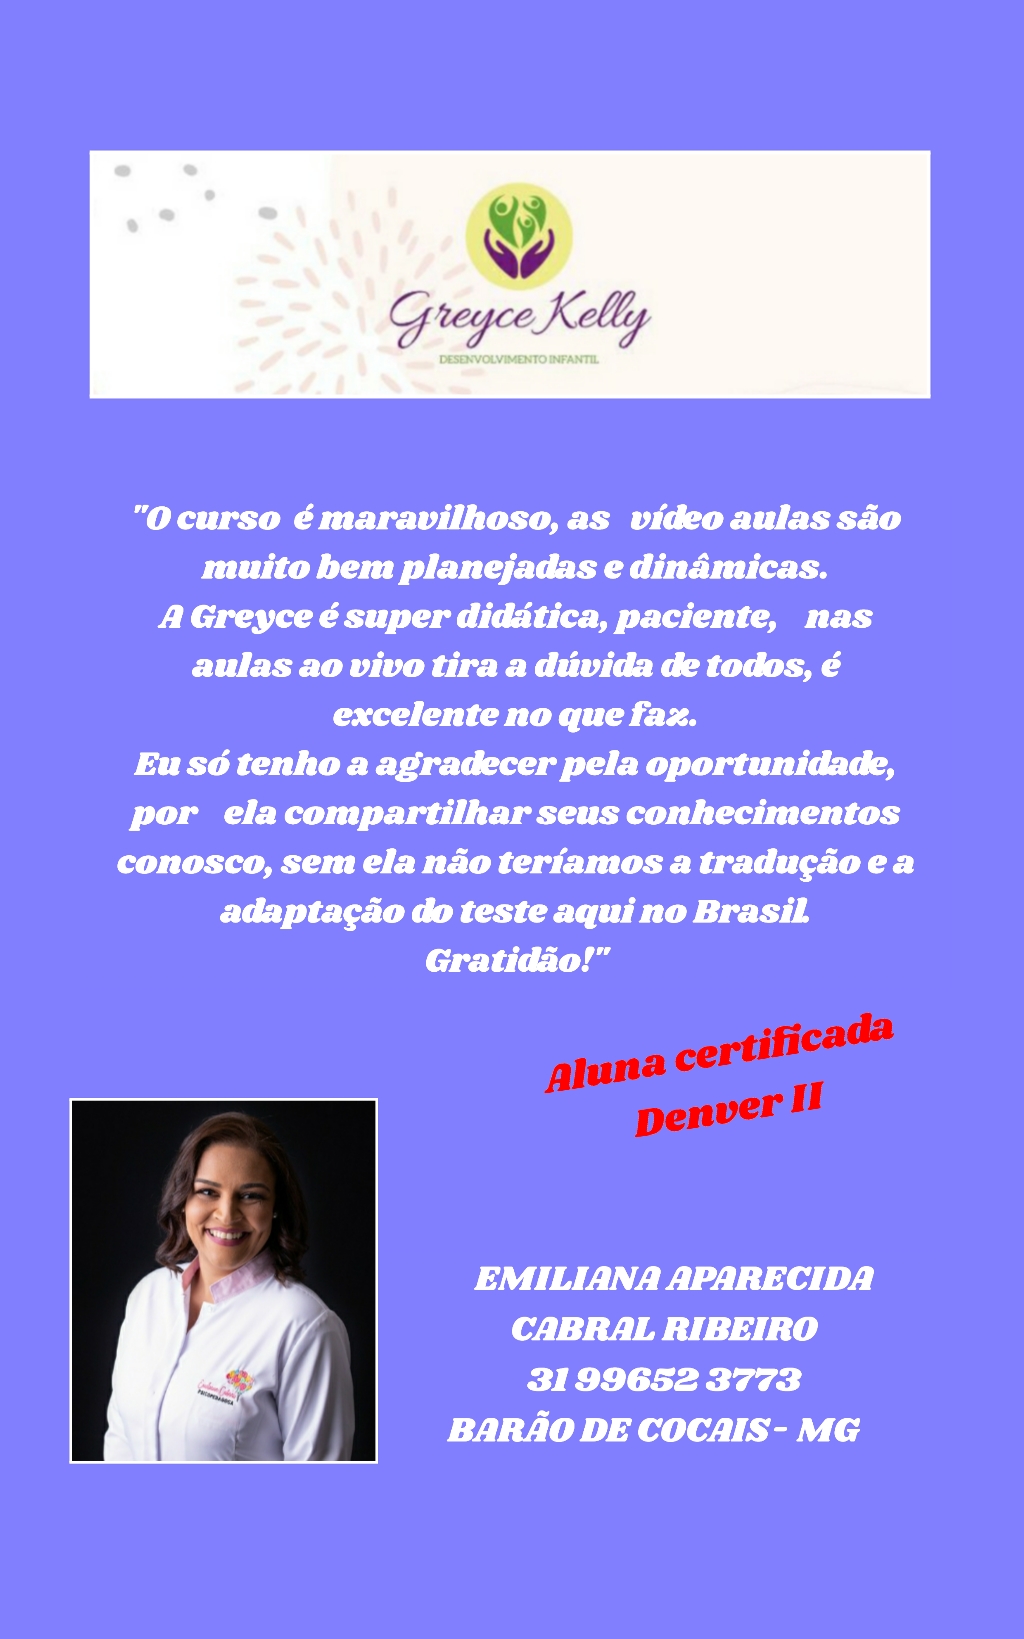 EMILIANA Aparecida Cabral Ribeiro